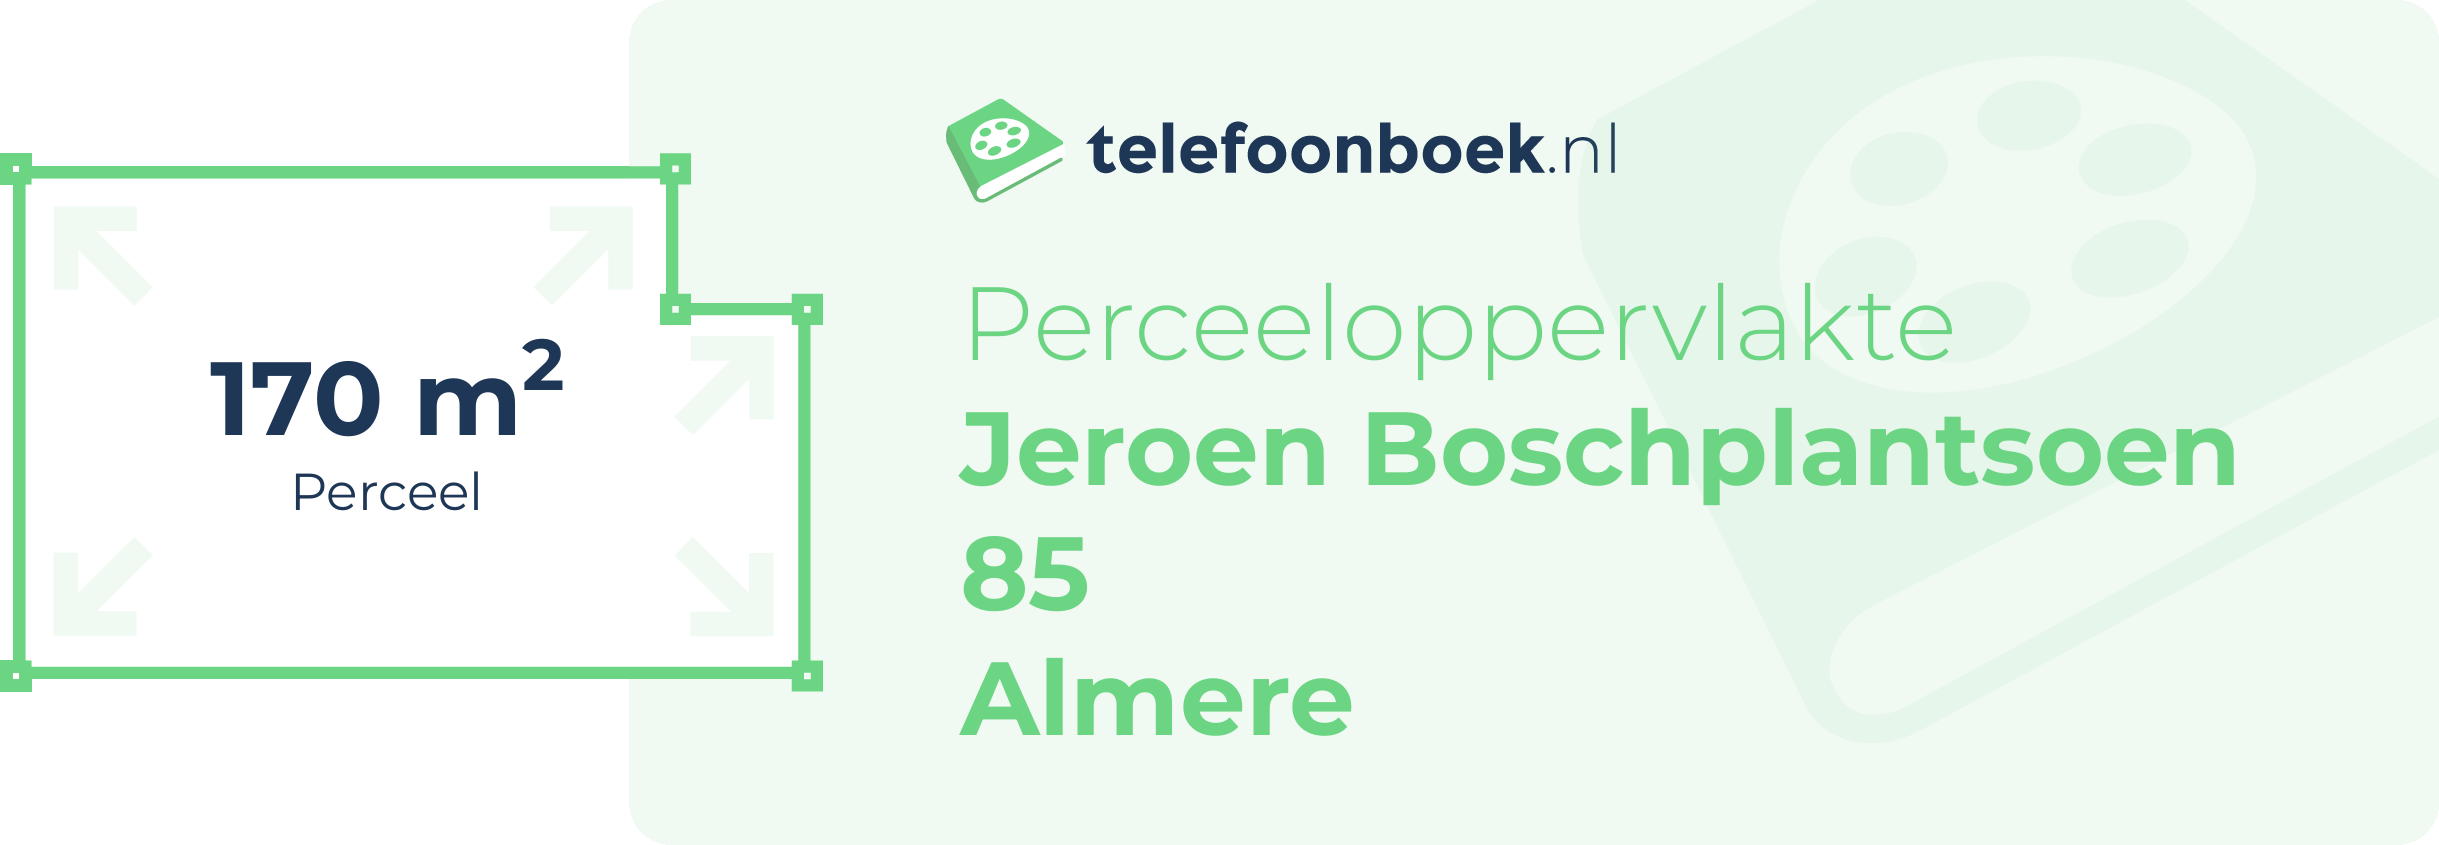 Perceeloppervlakte Jeroen Boschplantsoen 85 Almere